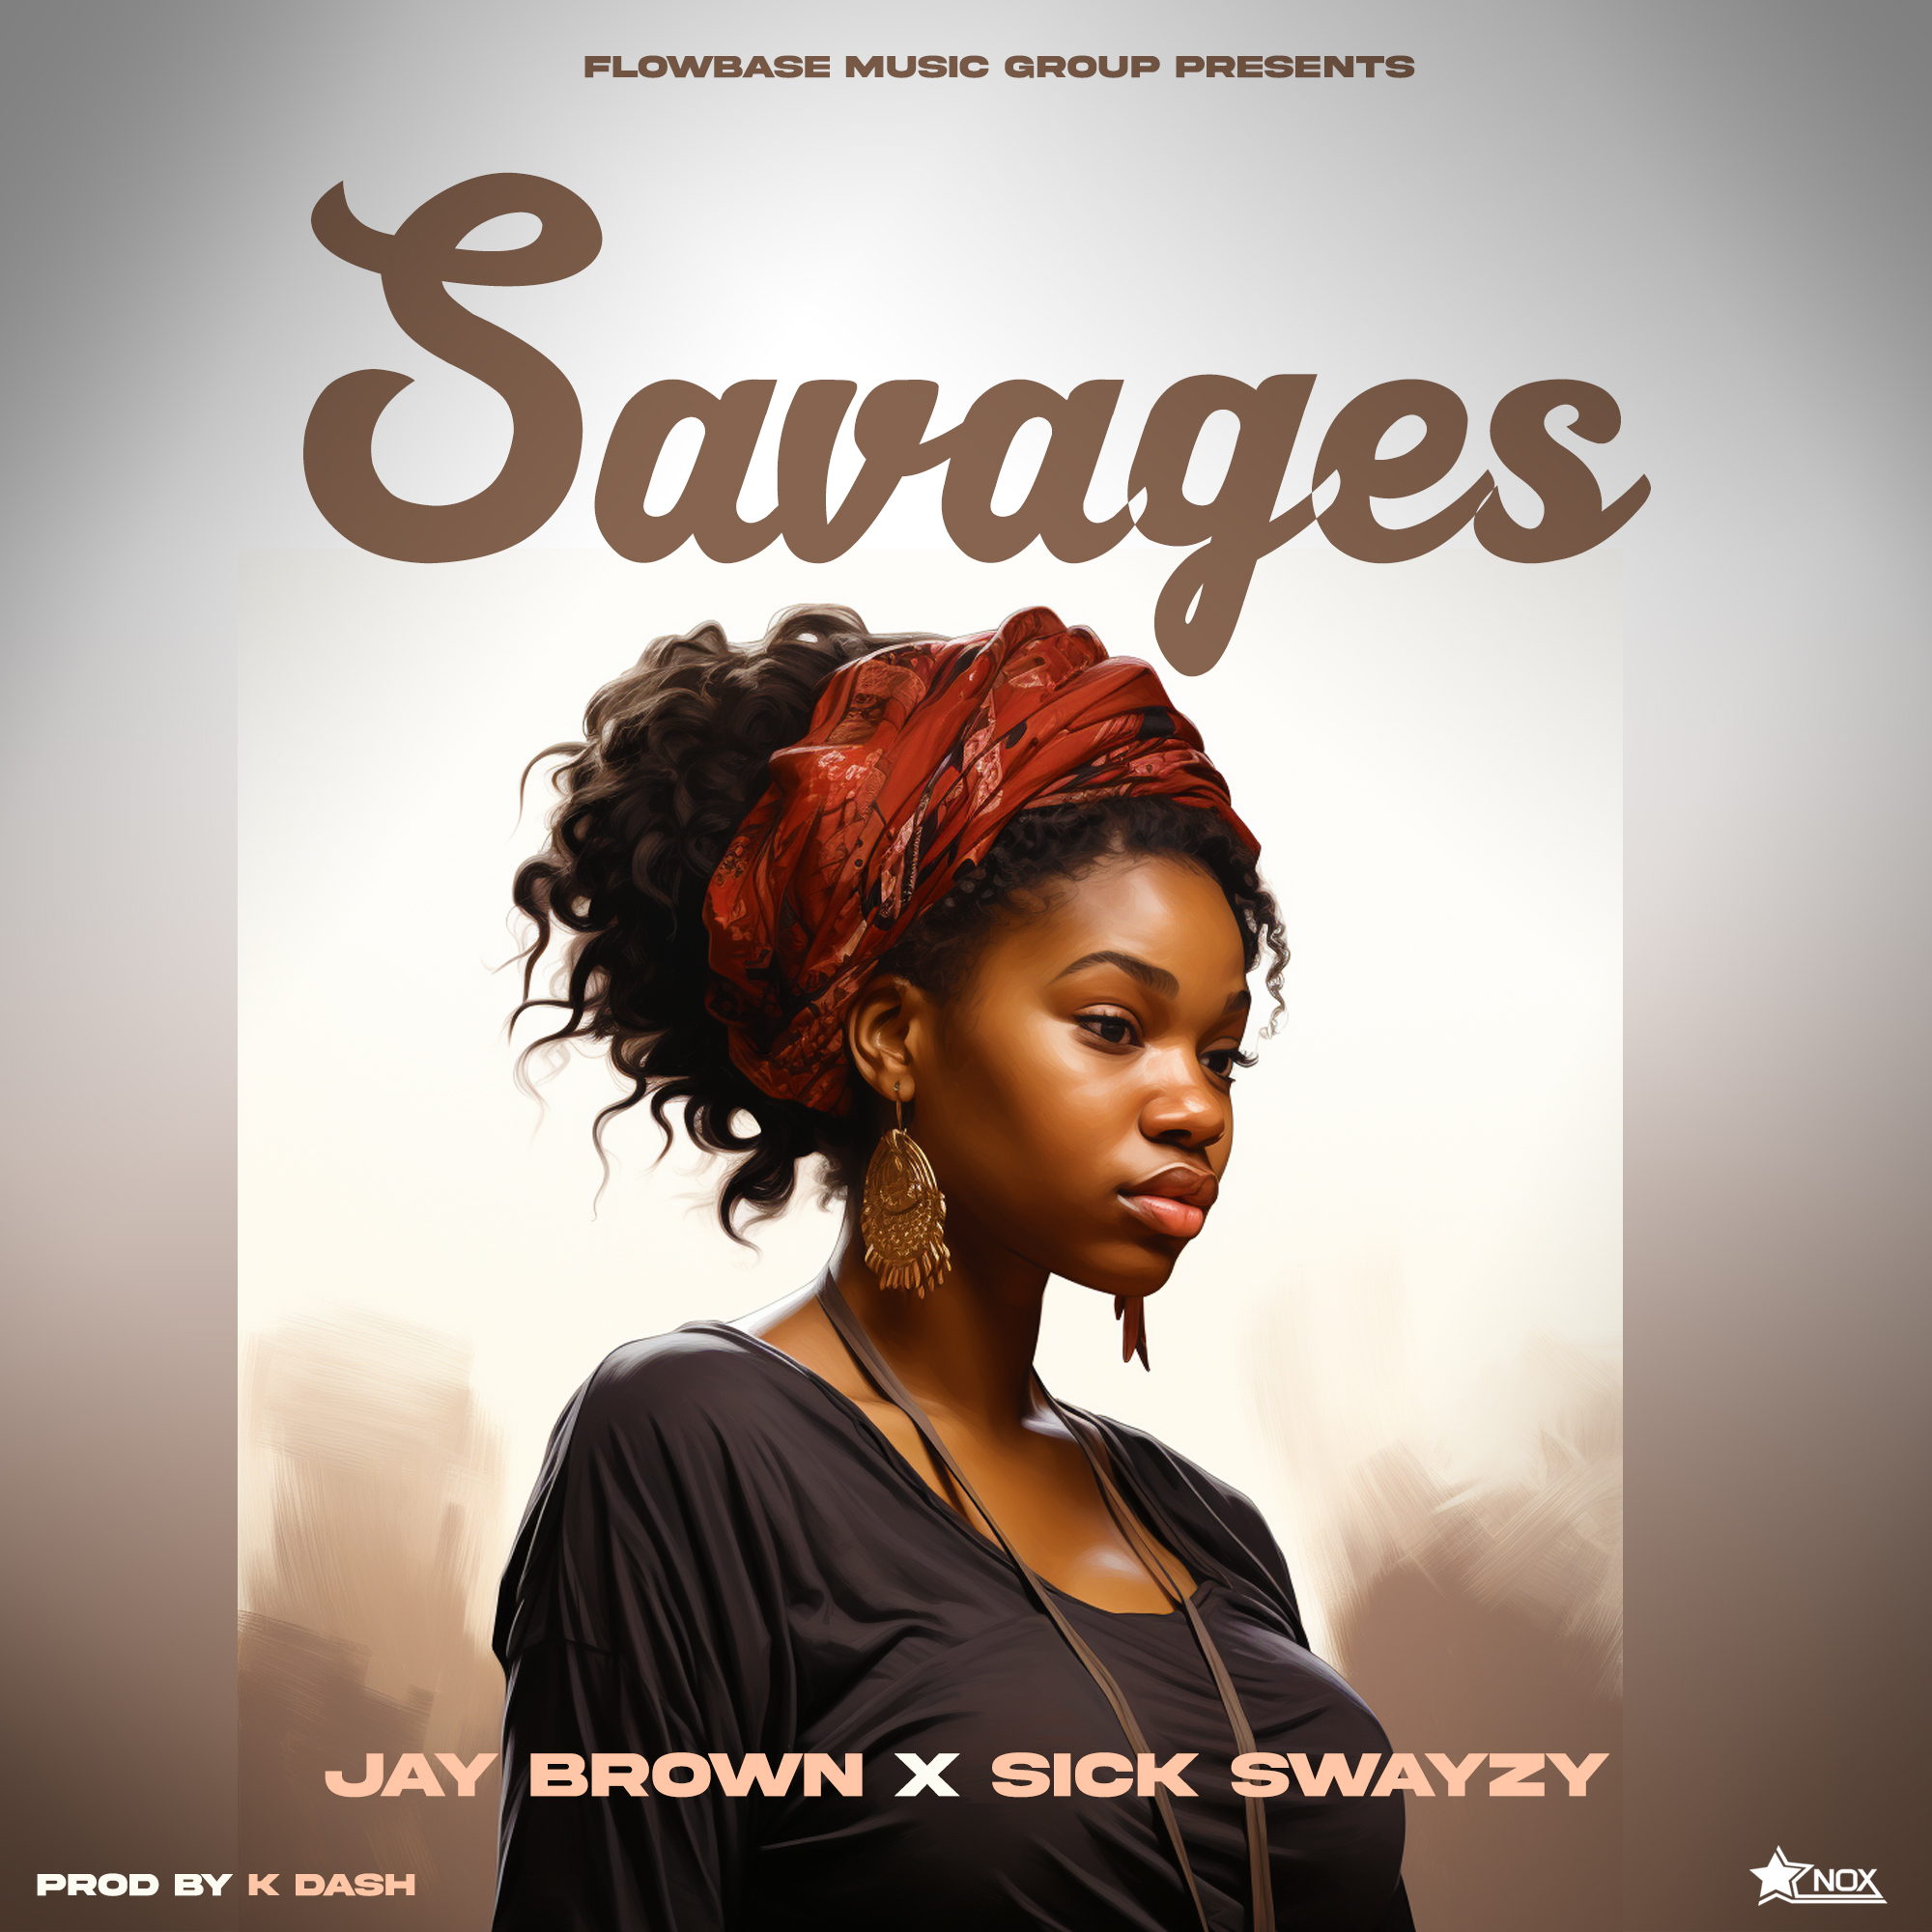 Sick - Swayzy X Jay Brown - Savages